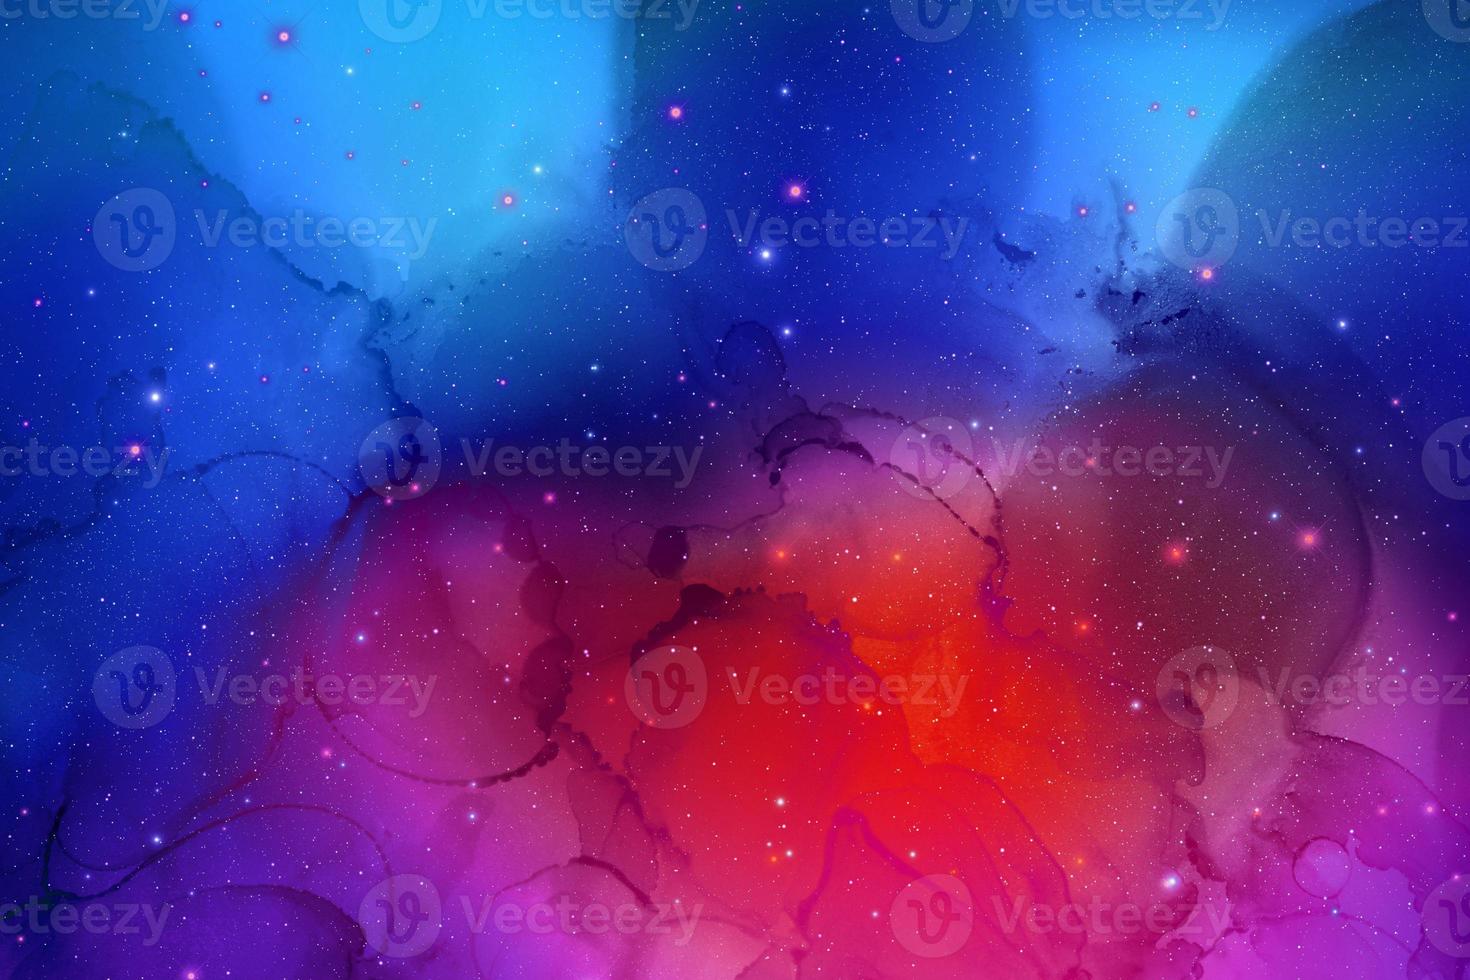 El fondo de galaxias abstractas con estrellas y planetas en motivos azules y rojos del universo espacio de luz nocturna foto